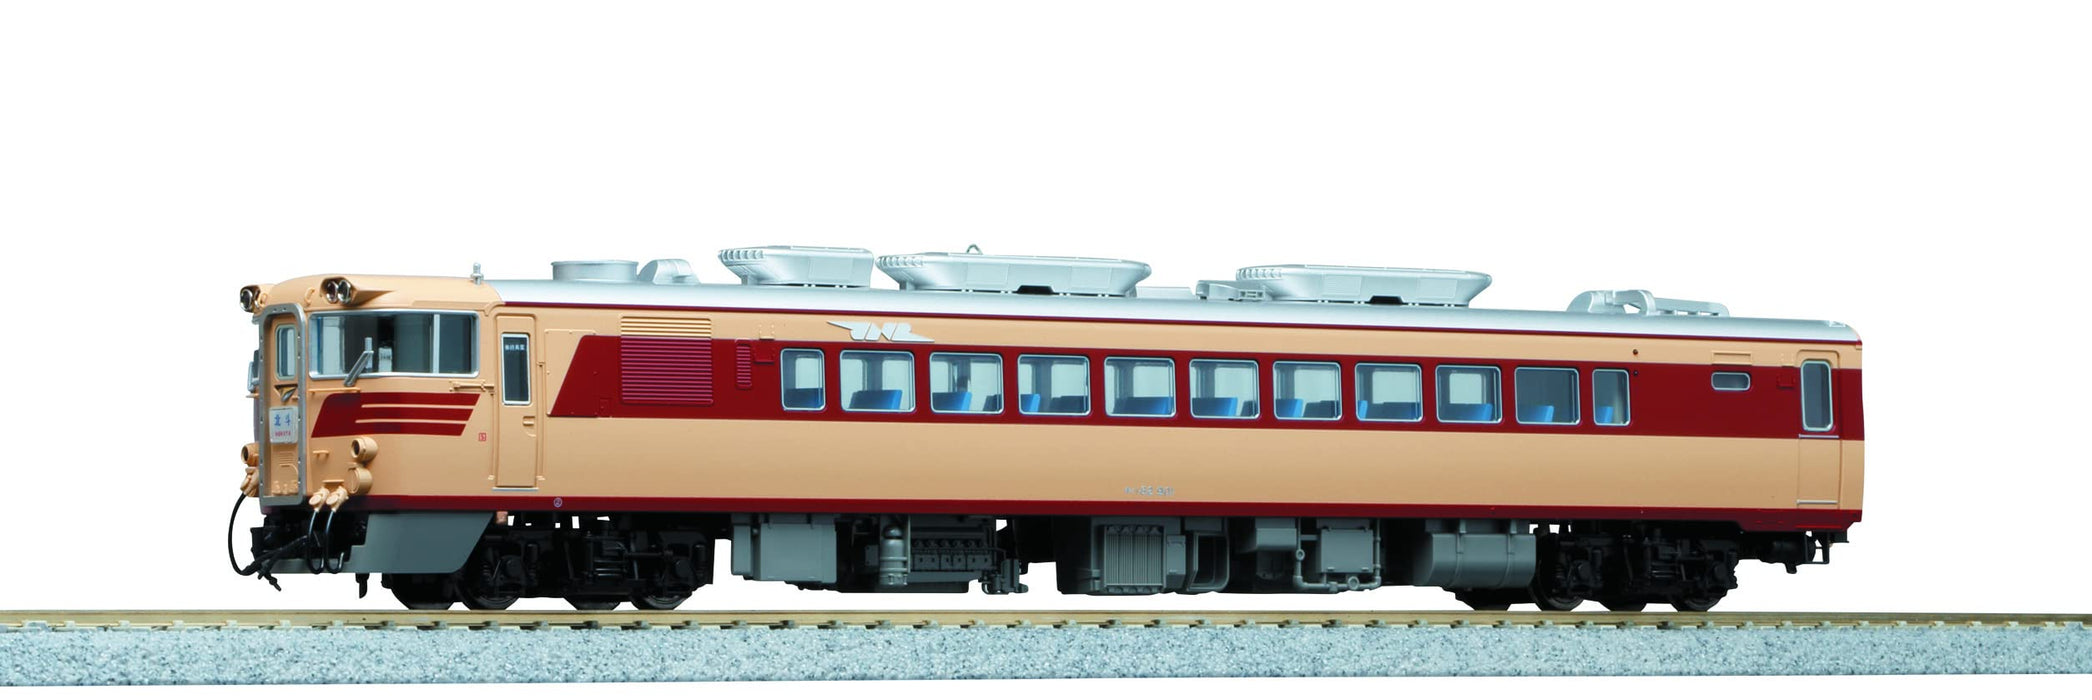 Kato Kiha82 900 1-613 Ho Gauge Diesel Car - Elite Railway Model